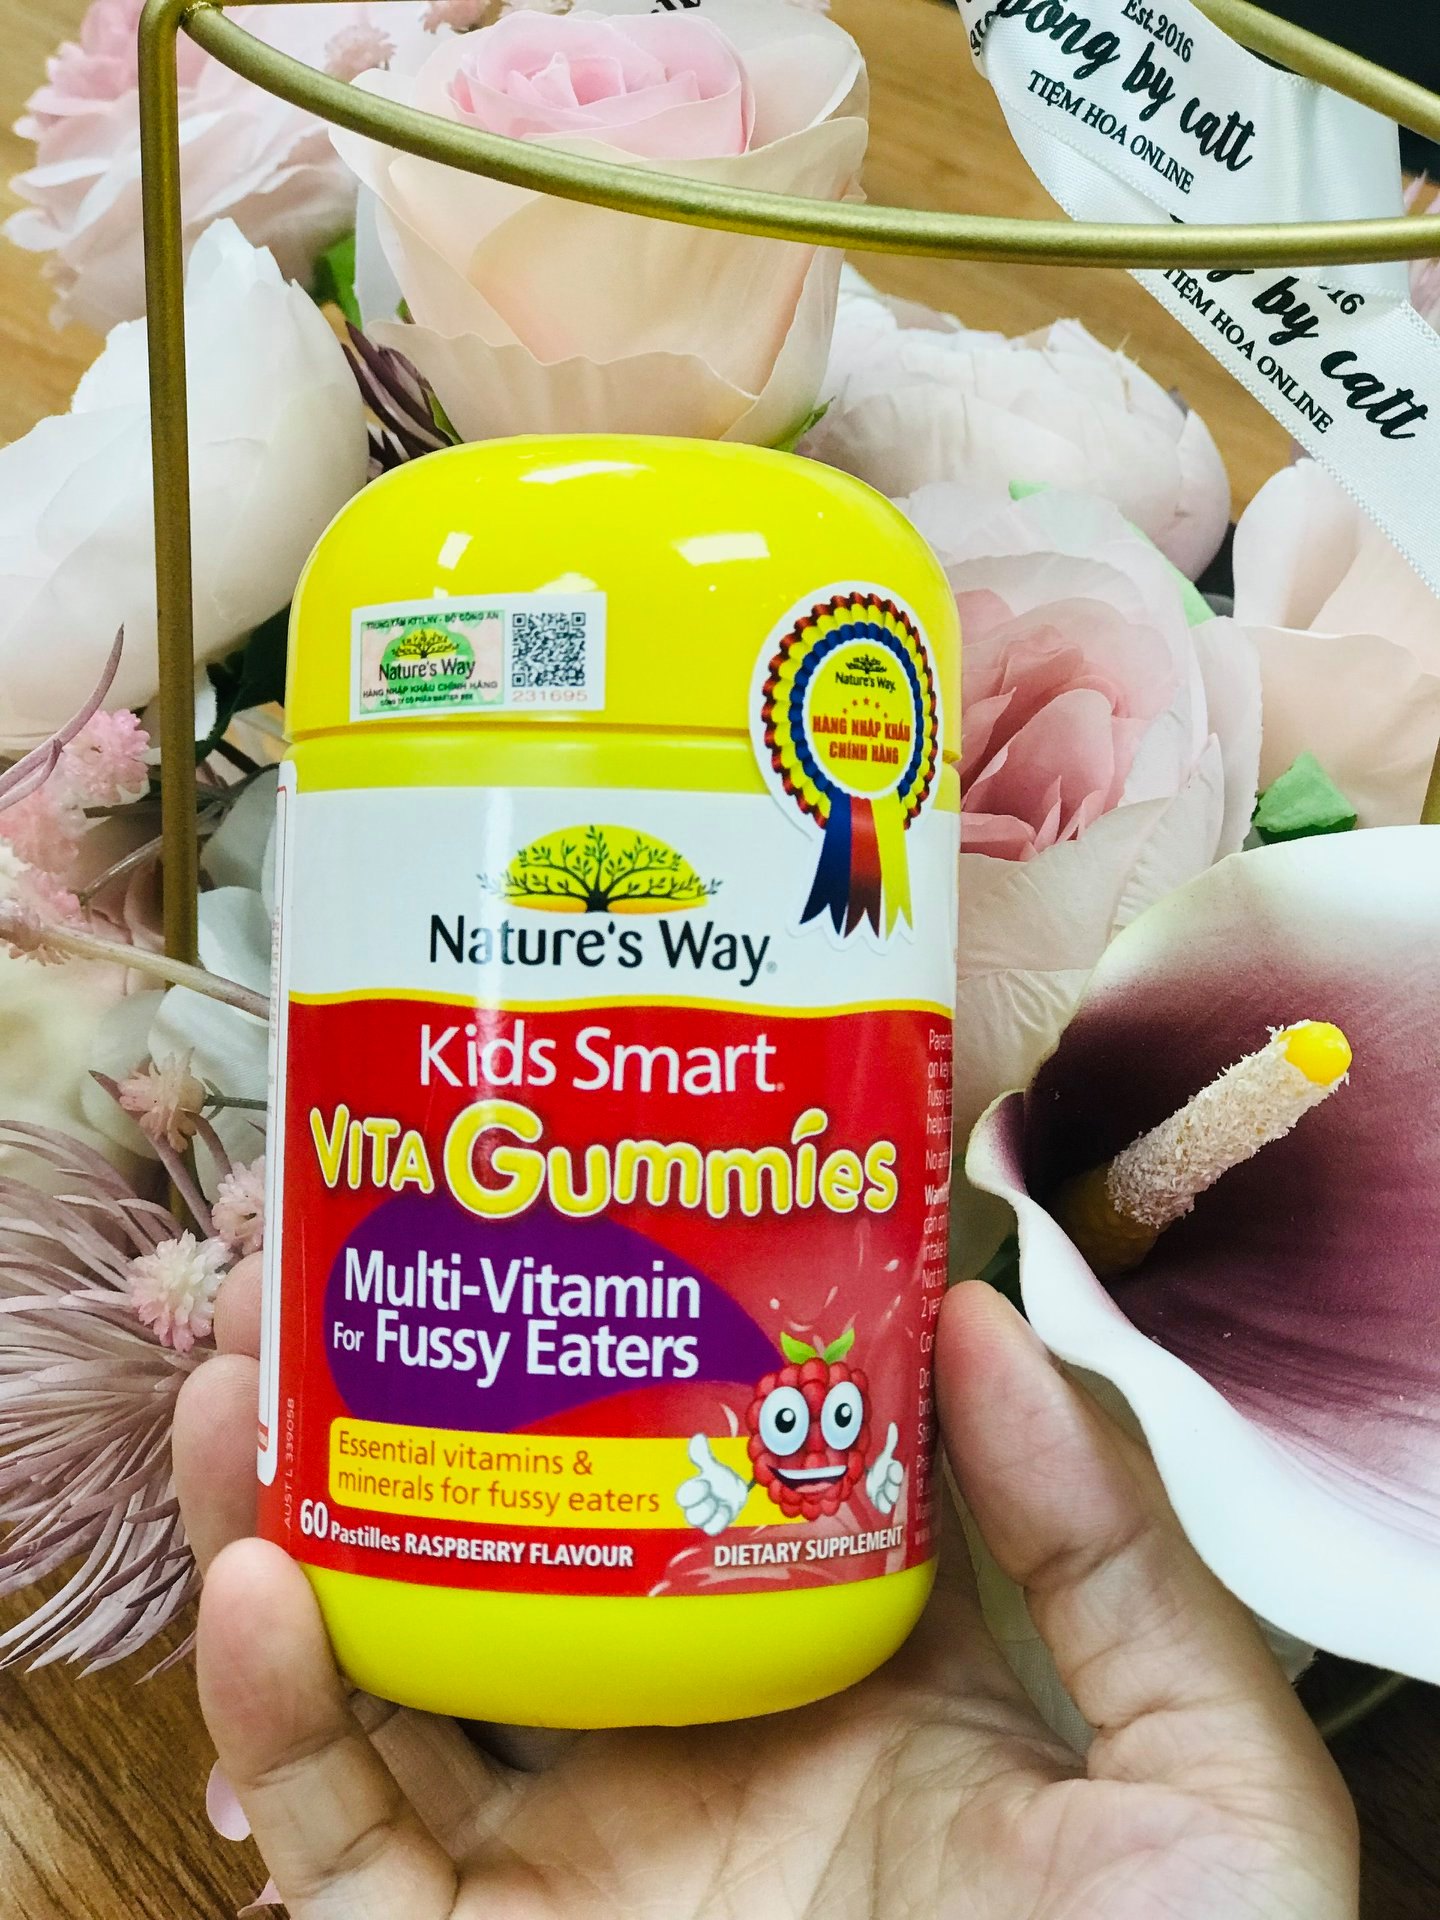 Vita gummies multi vitamin for fussy eaters kích thích ăn ngon, hỗ trợ tiêu hóa cho trẻ